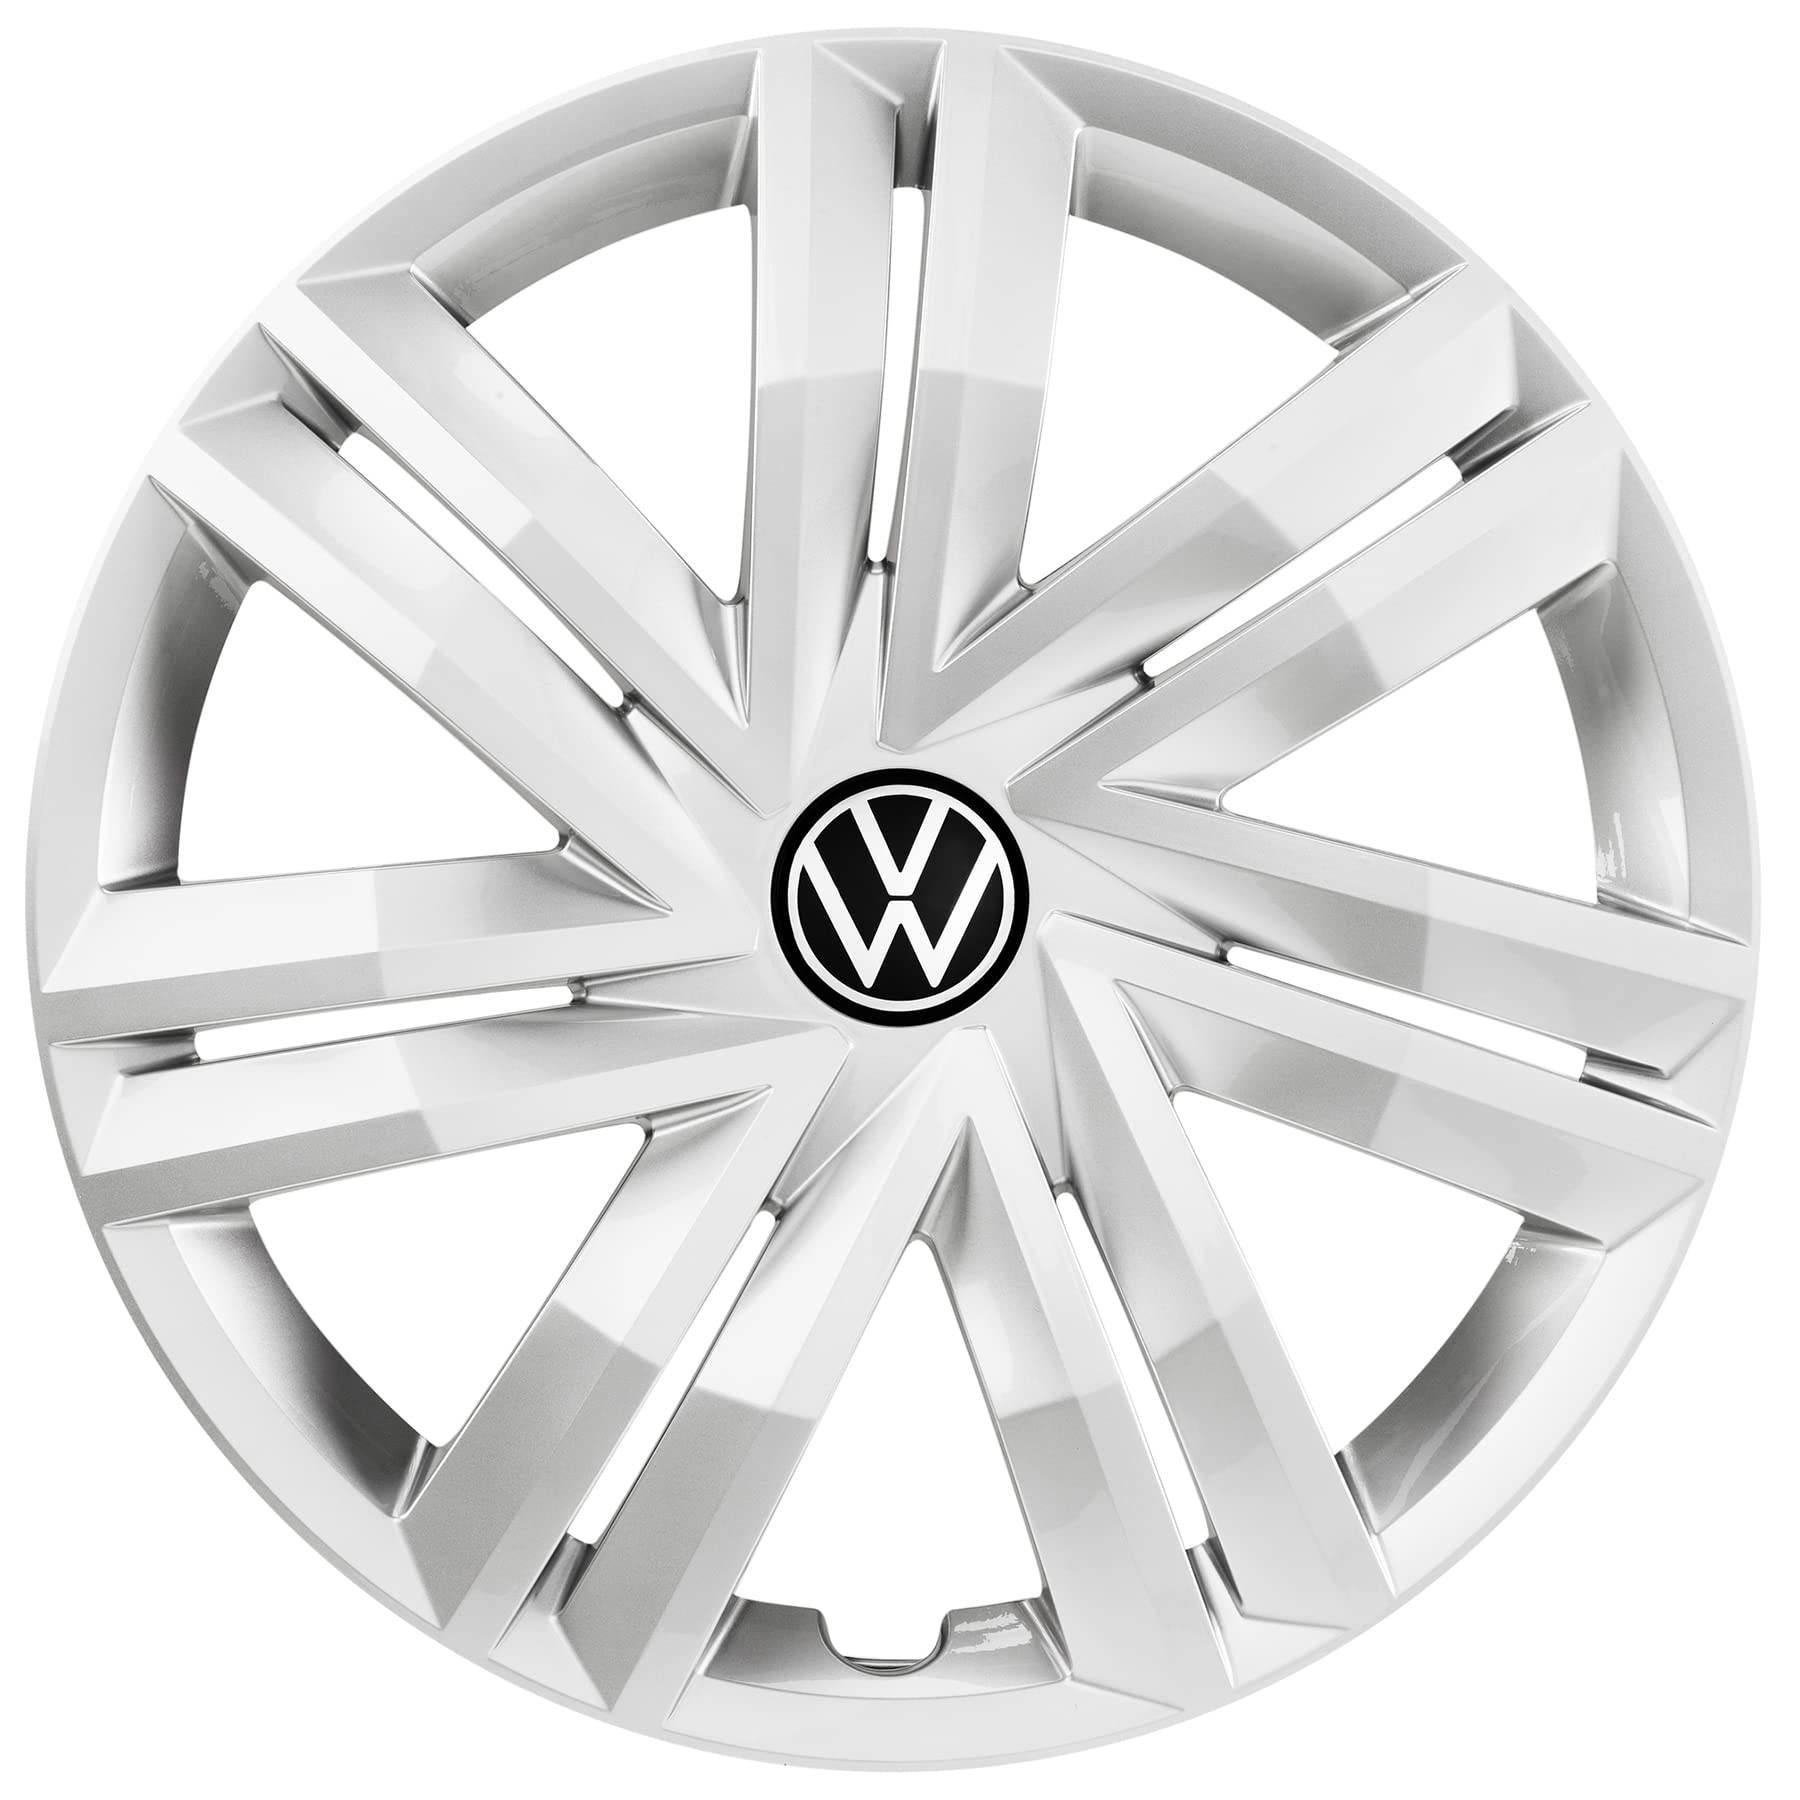 Radkappen von Volkswagen. Anbieter finden und Preise vergleichen.